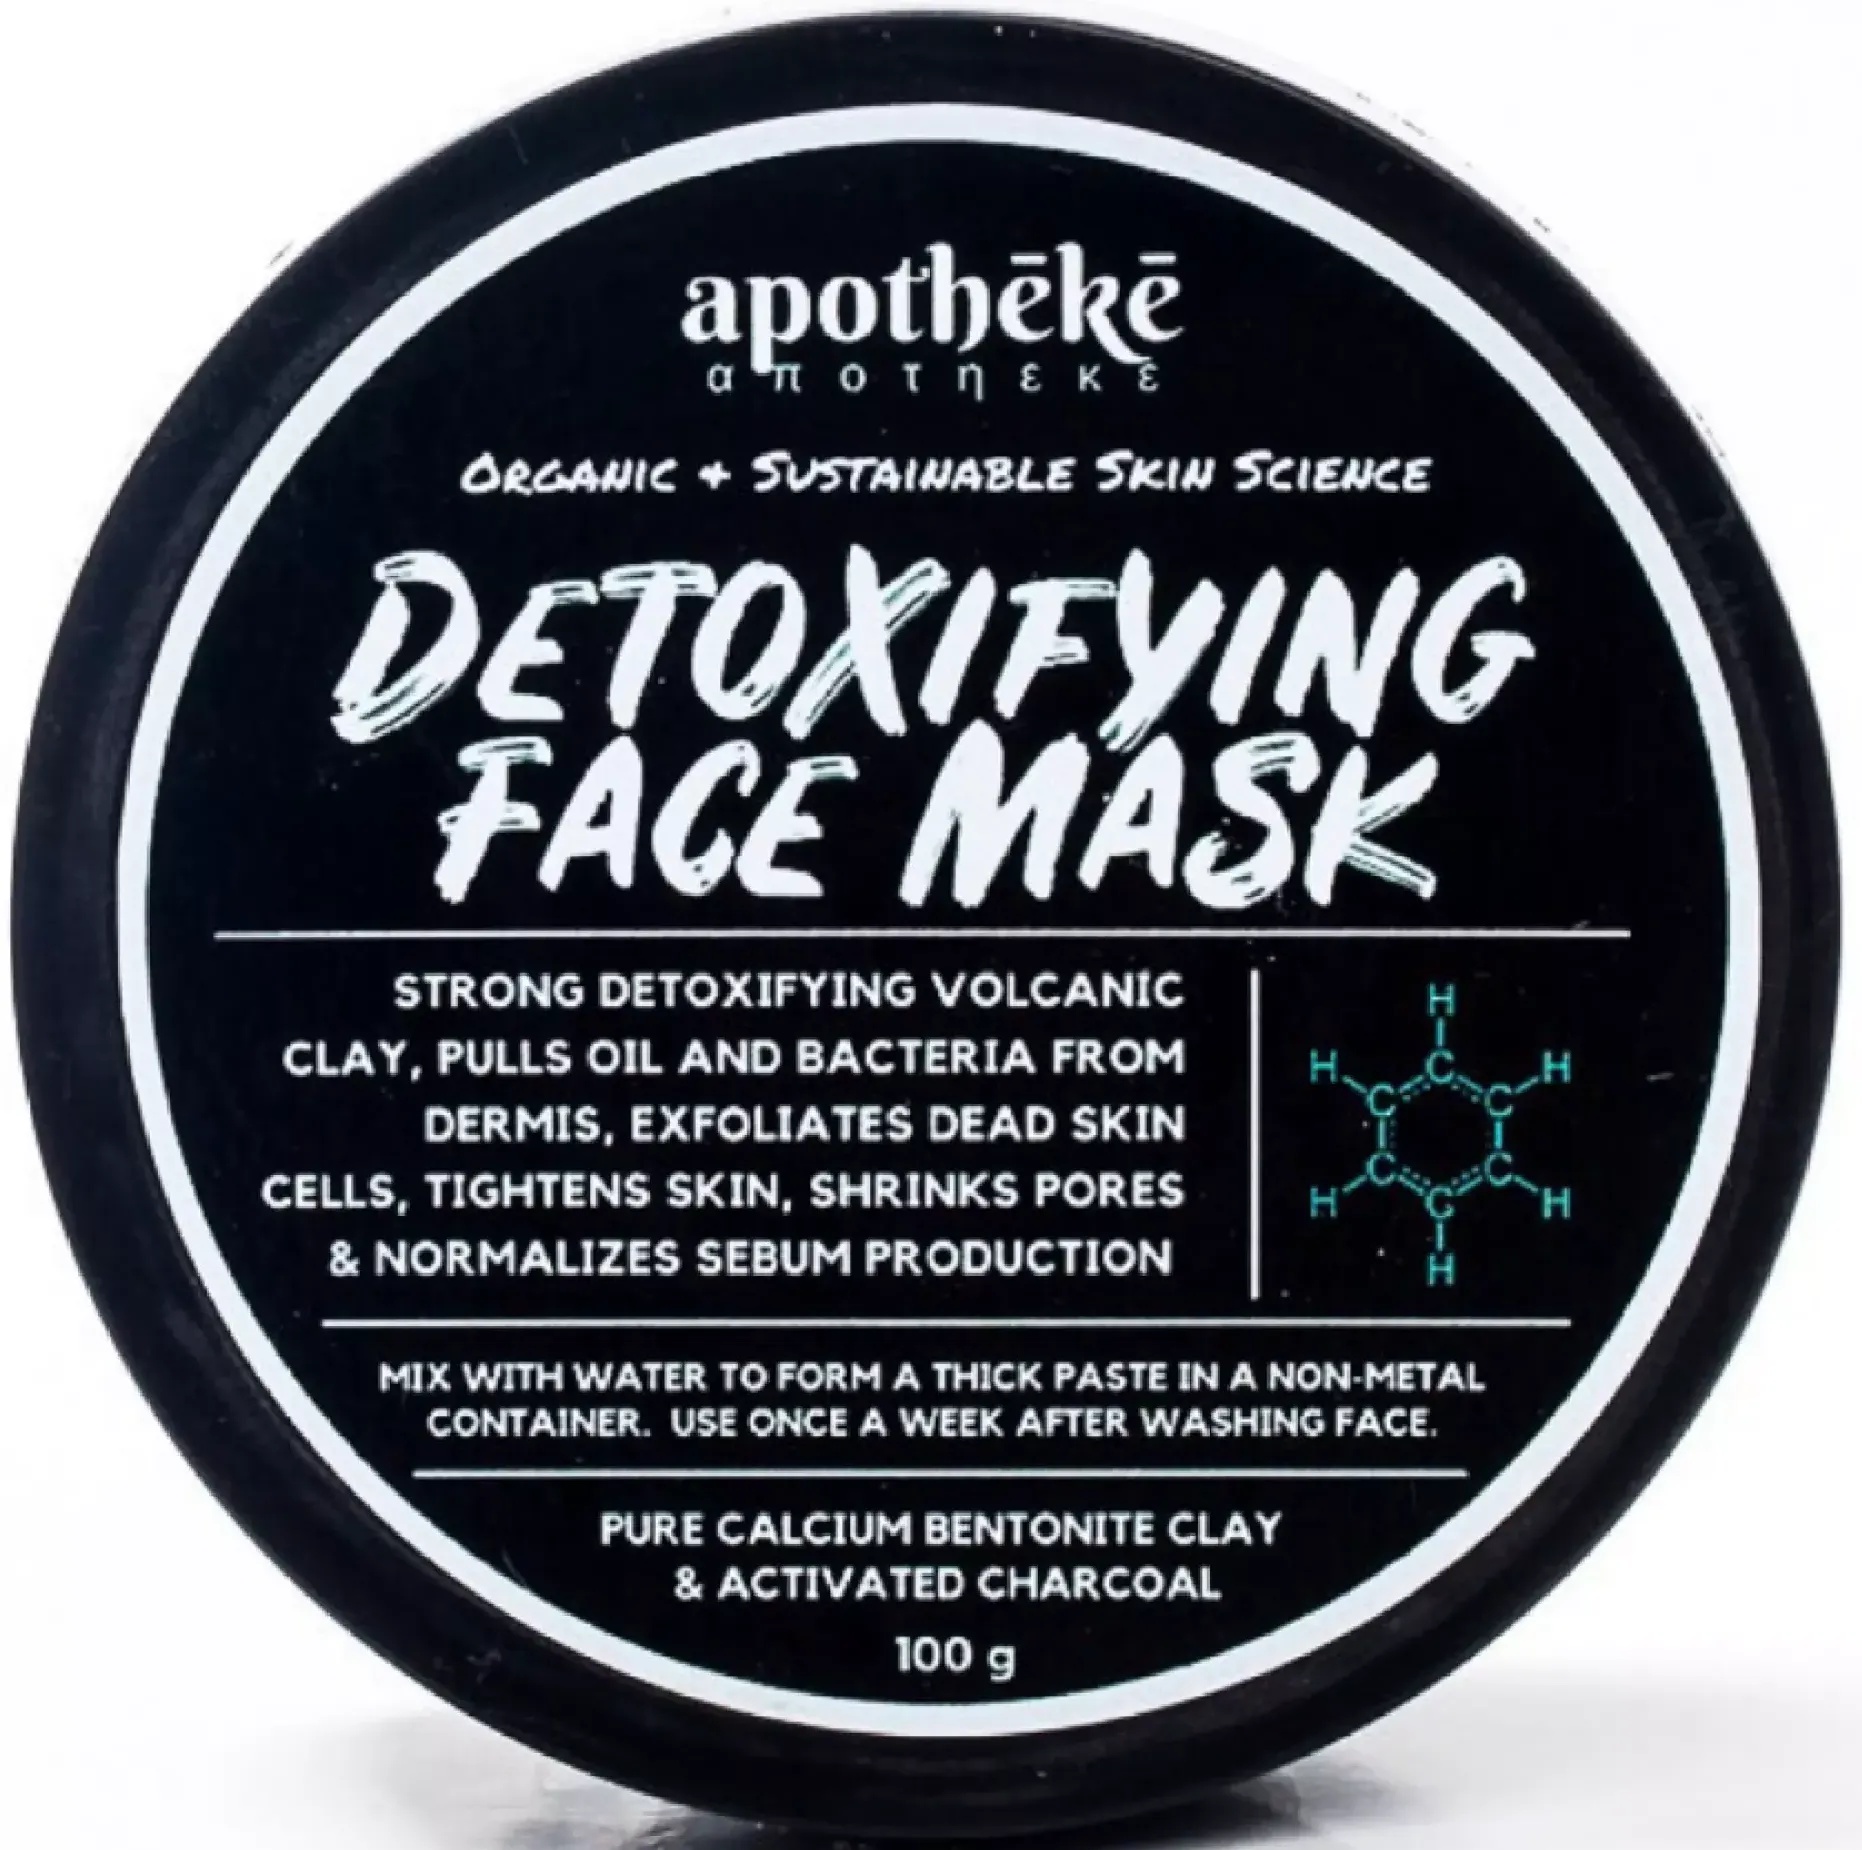 Apotheke Detoxifying Face Mask